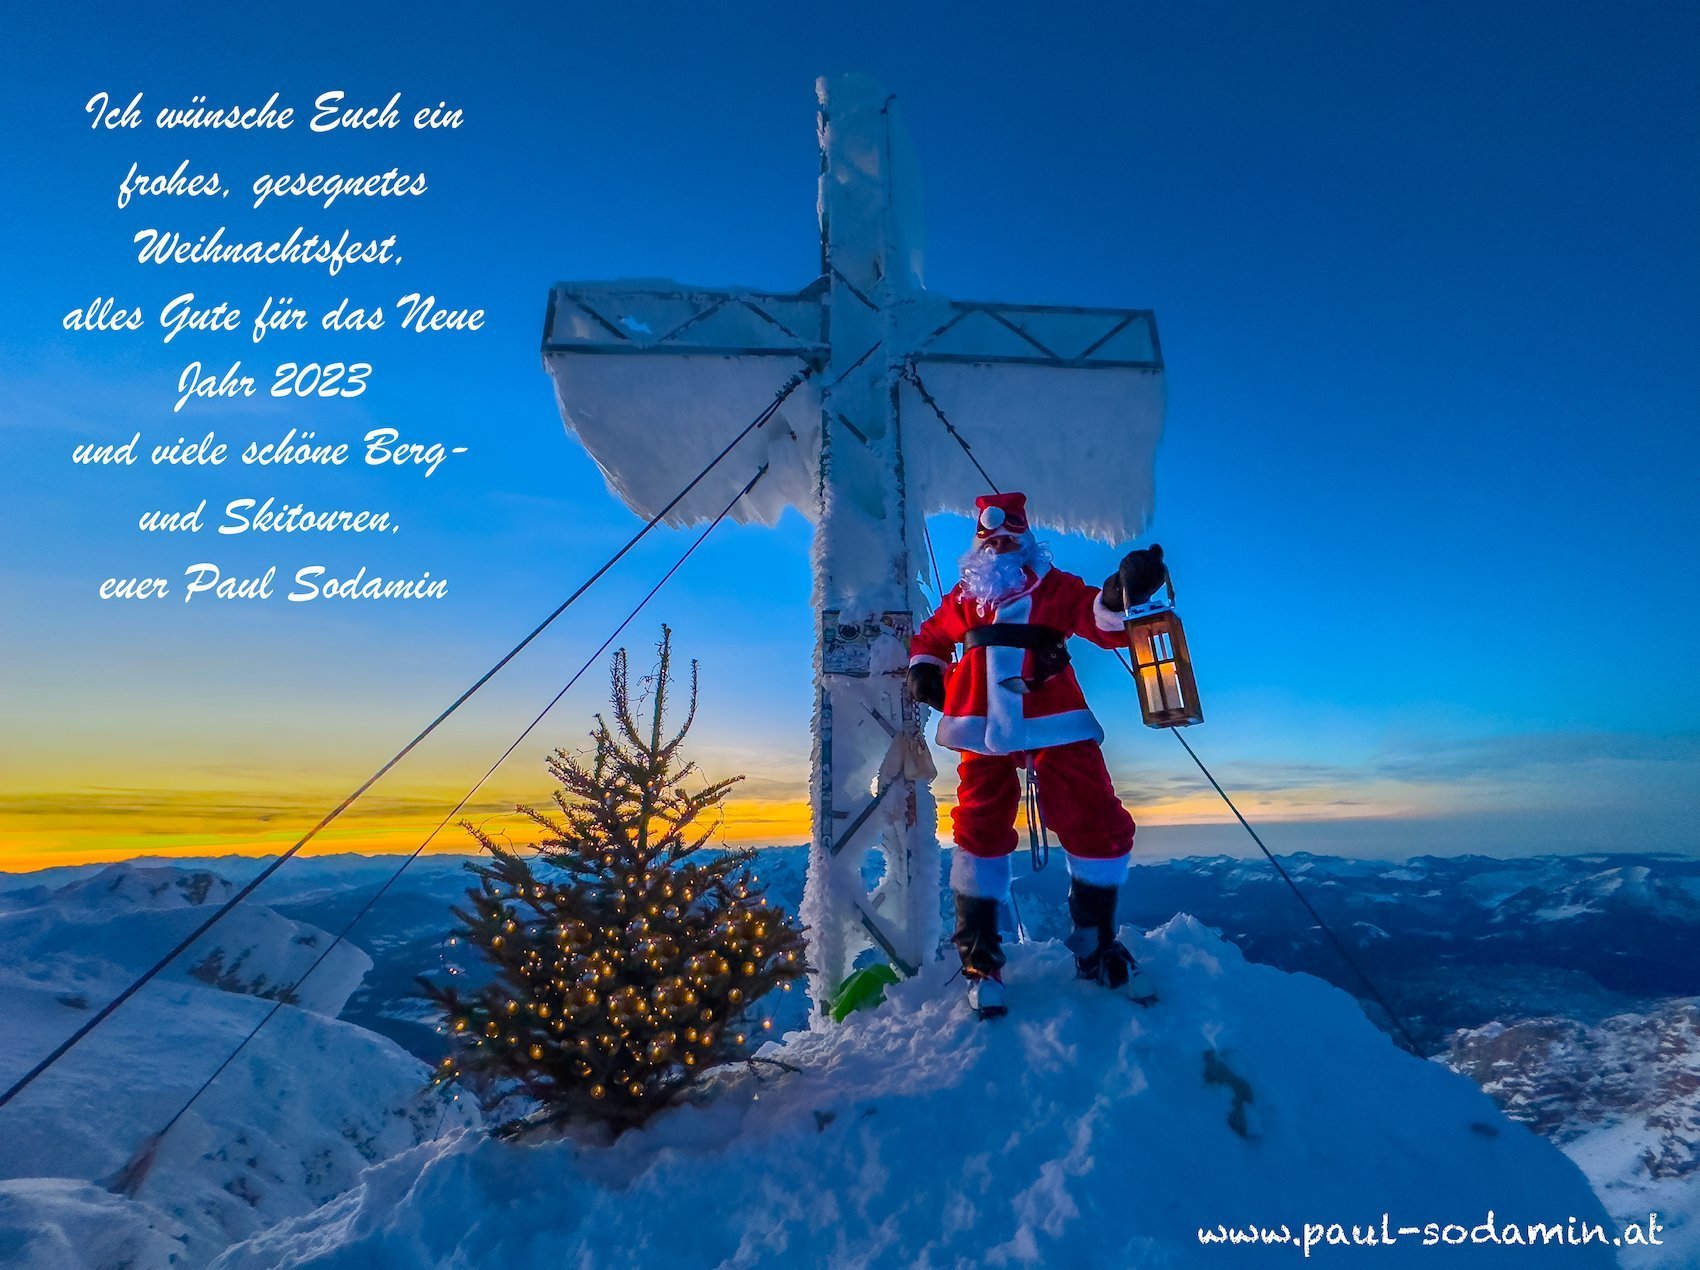 Ich wünsche Euch ein frohes gesegnetes Weihnachtsfest, alles Gute für das neue Jahr 2023 viele schöne Berg-und Skitouren, euer Paul Sodamin